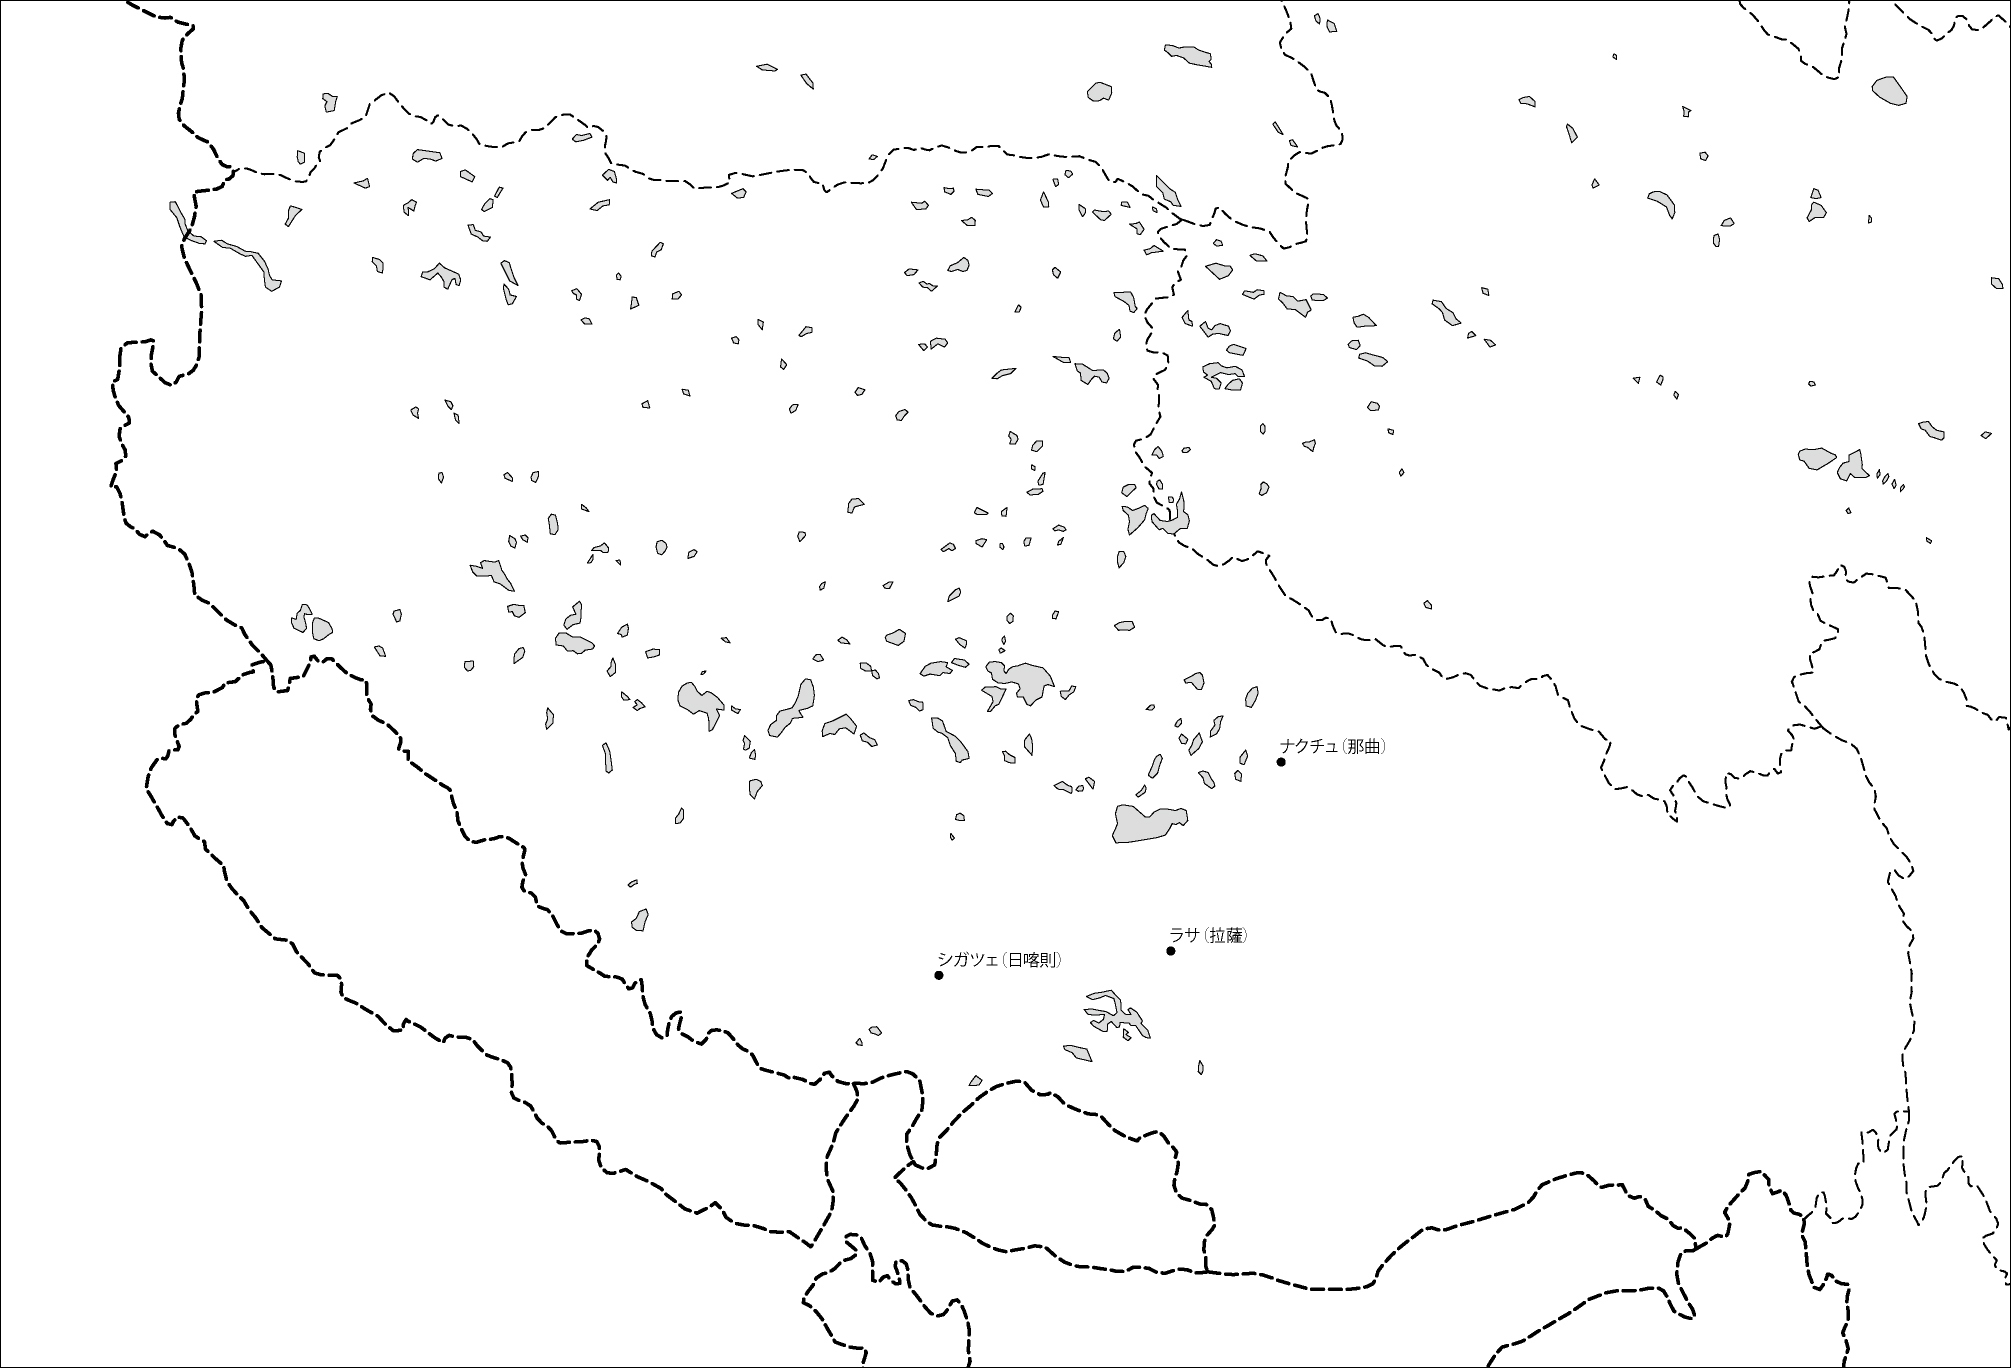 チベット自治区白地図(主な都市あり)のフリーデータの画像